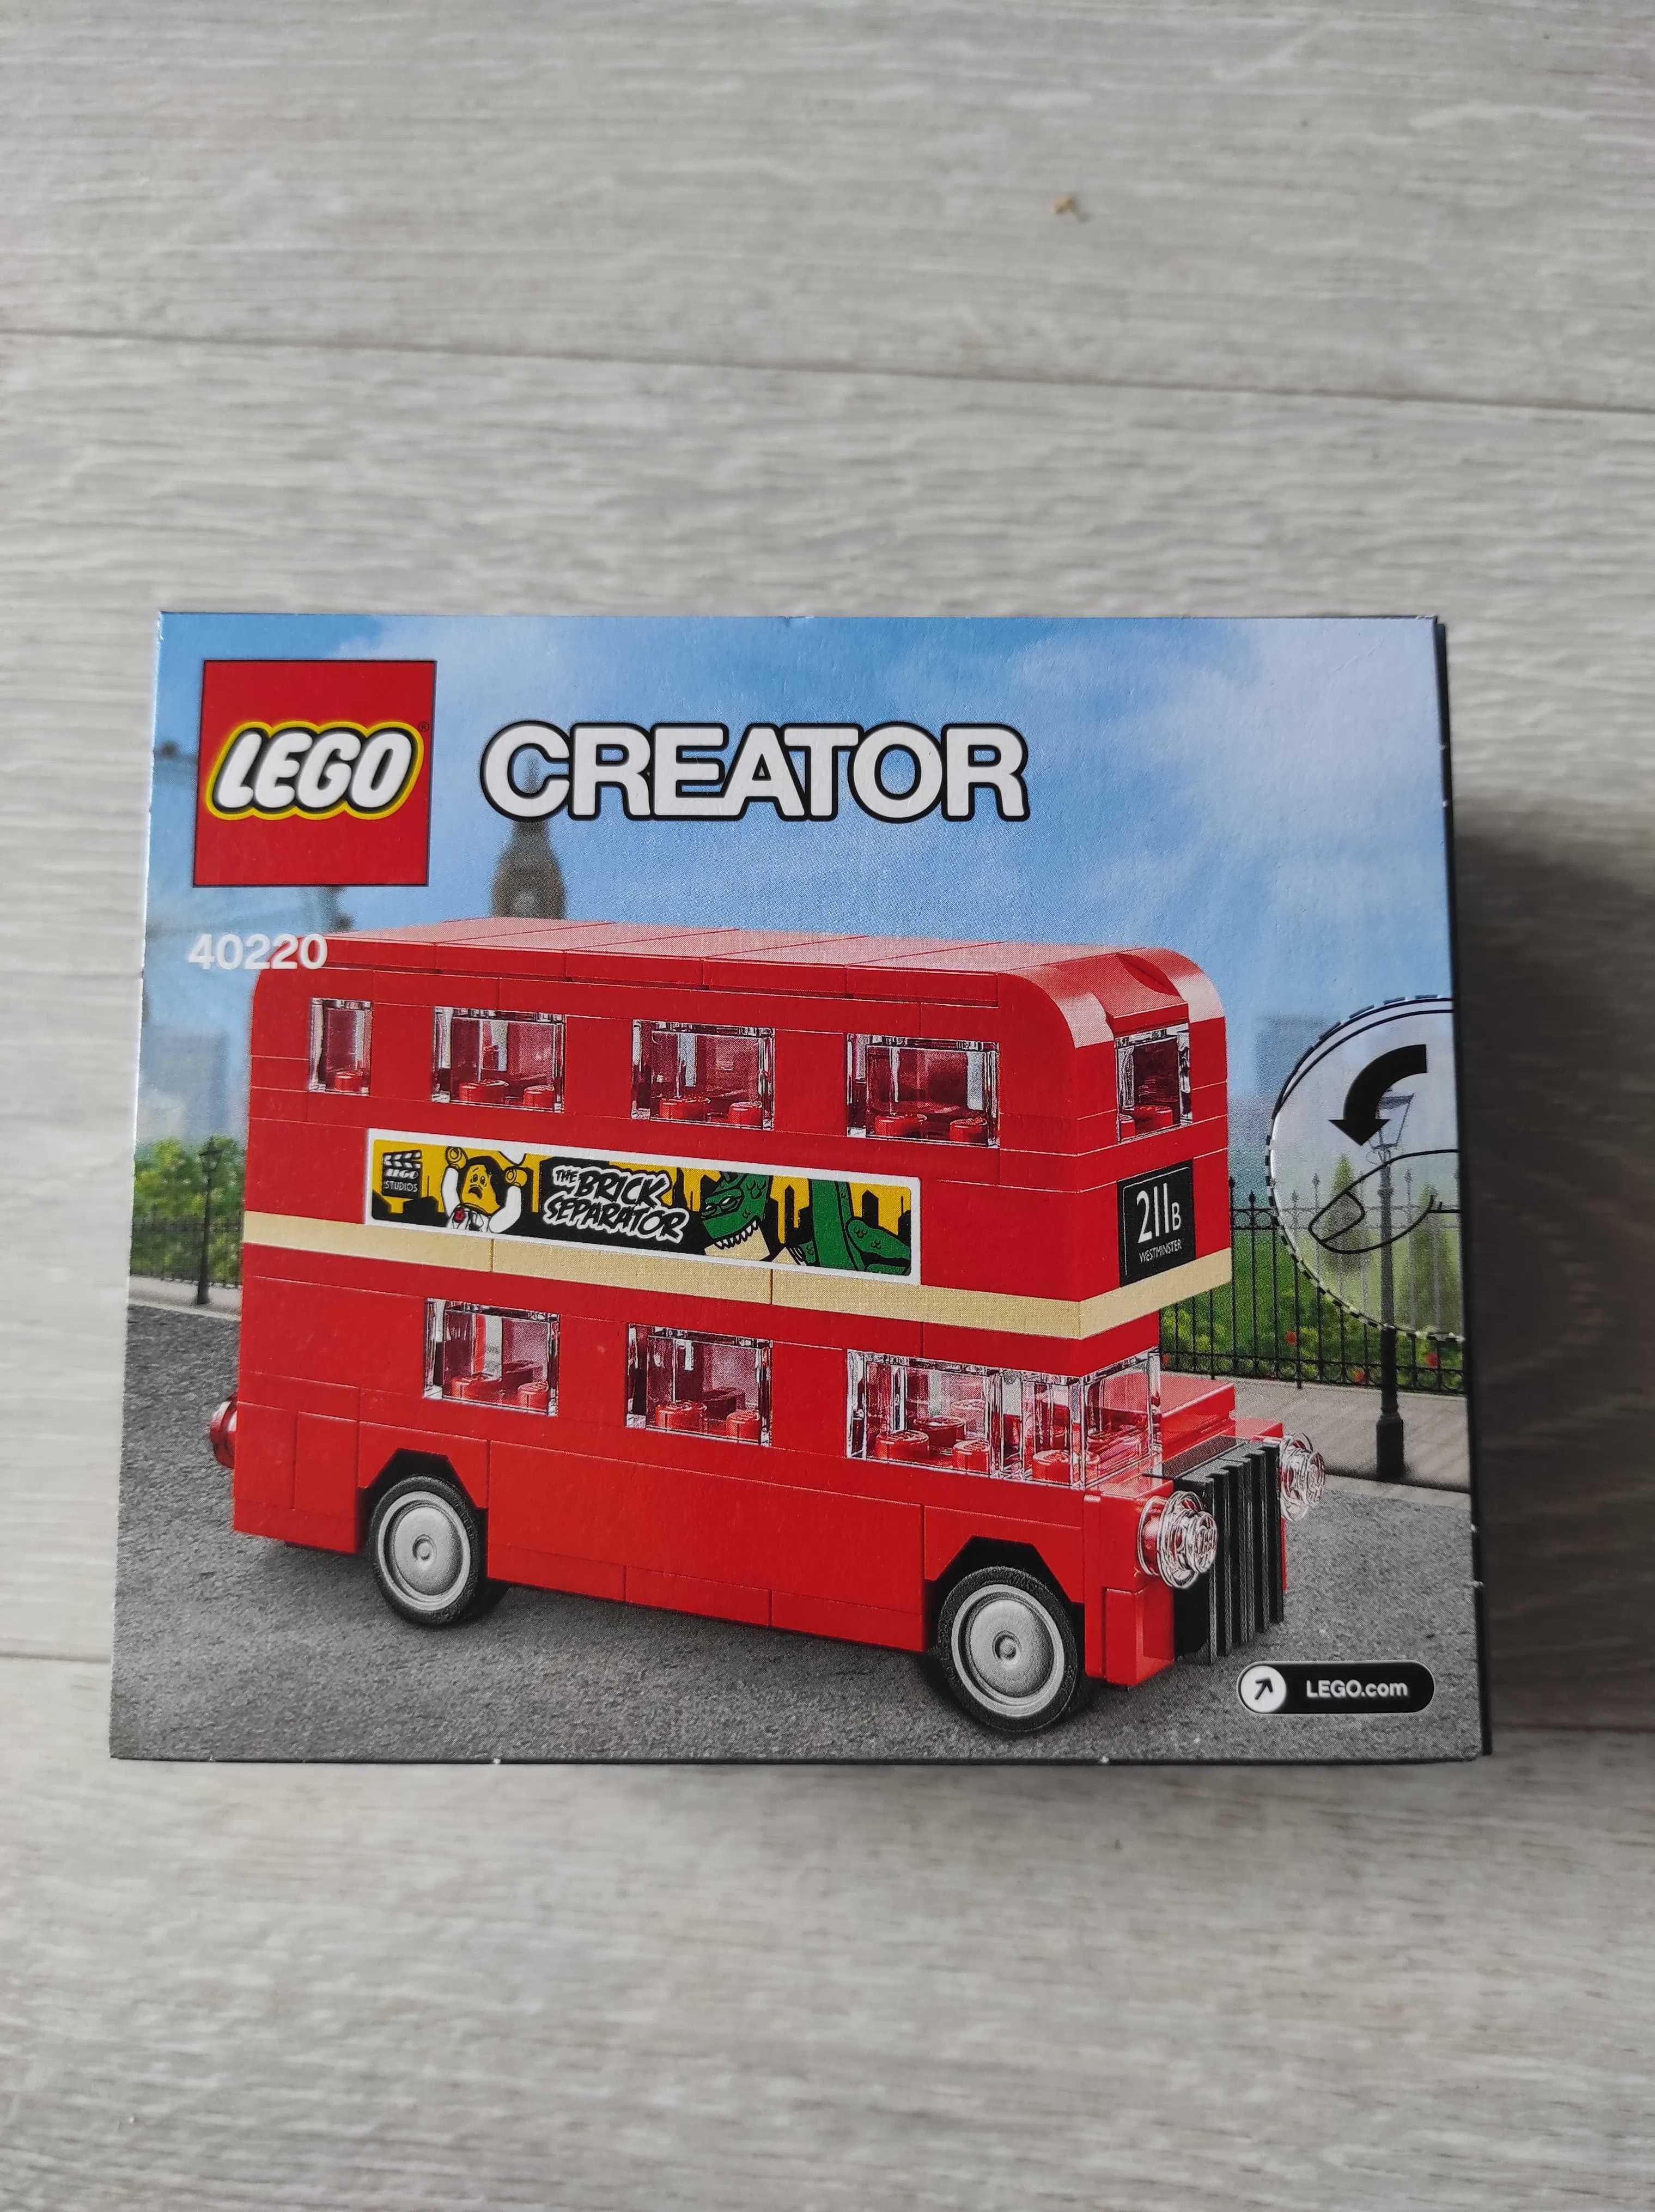 Lego Creator autobus Anglia czerwony dwupiętrowy 40220